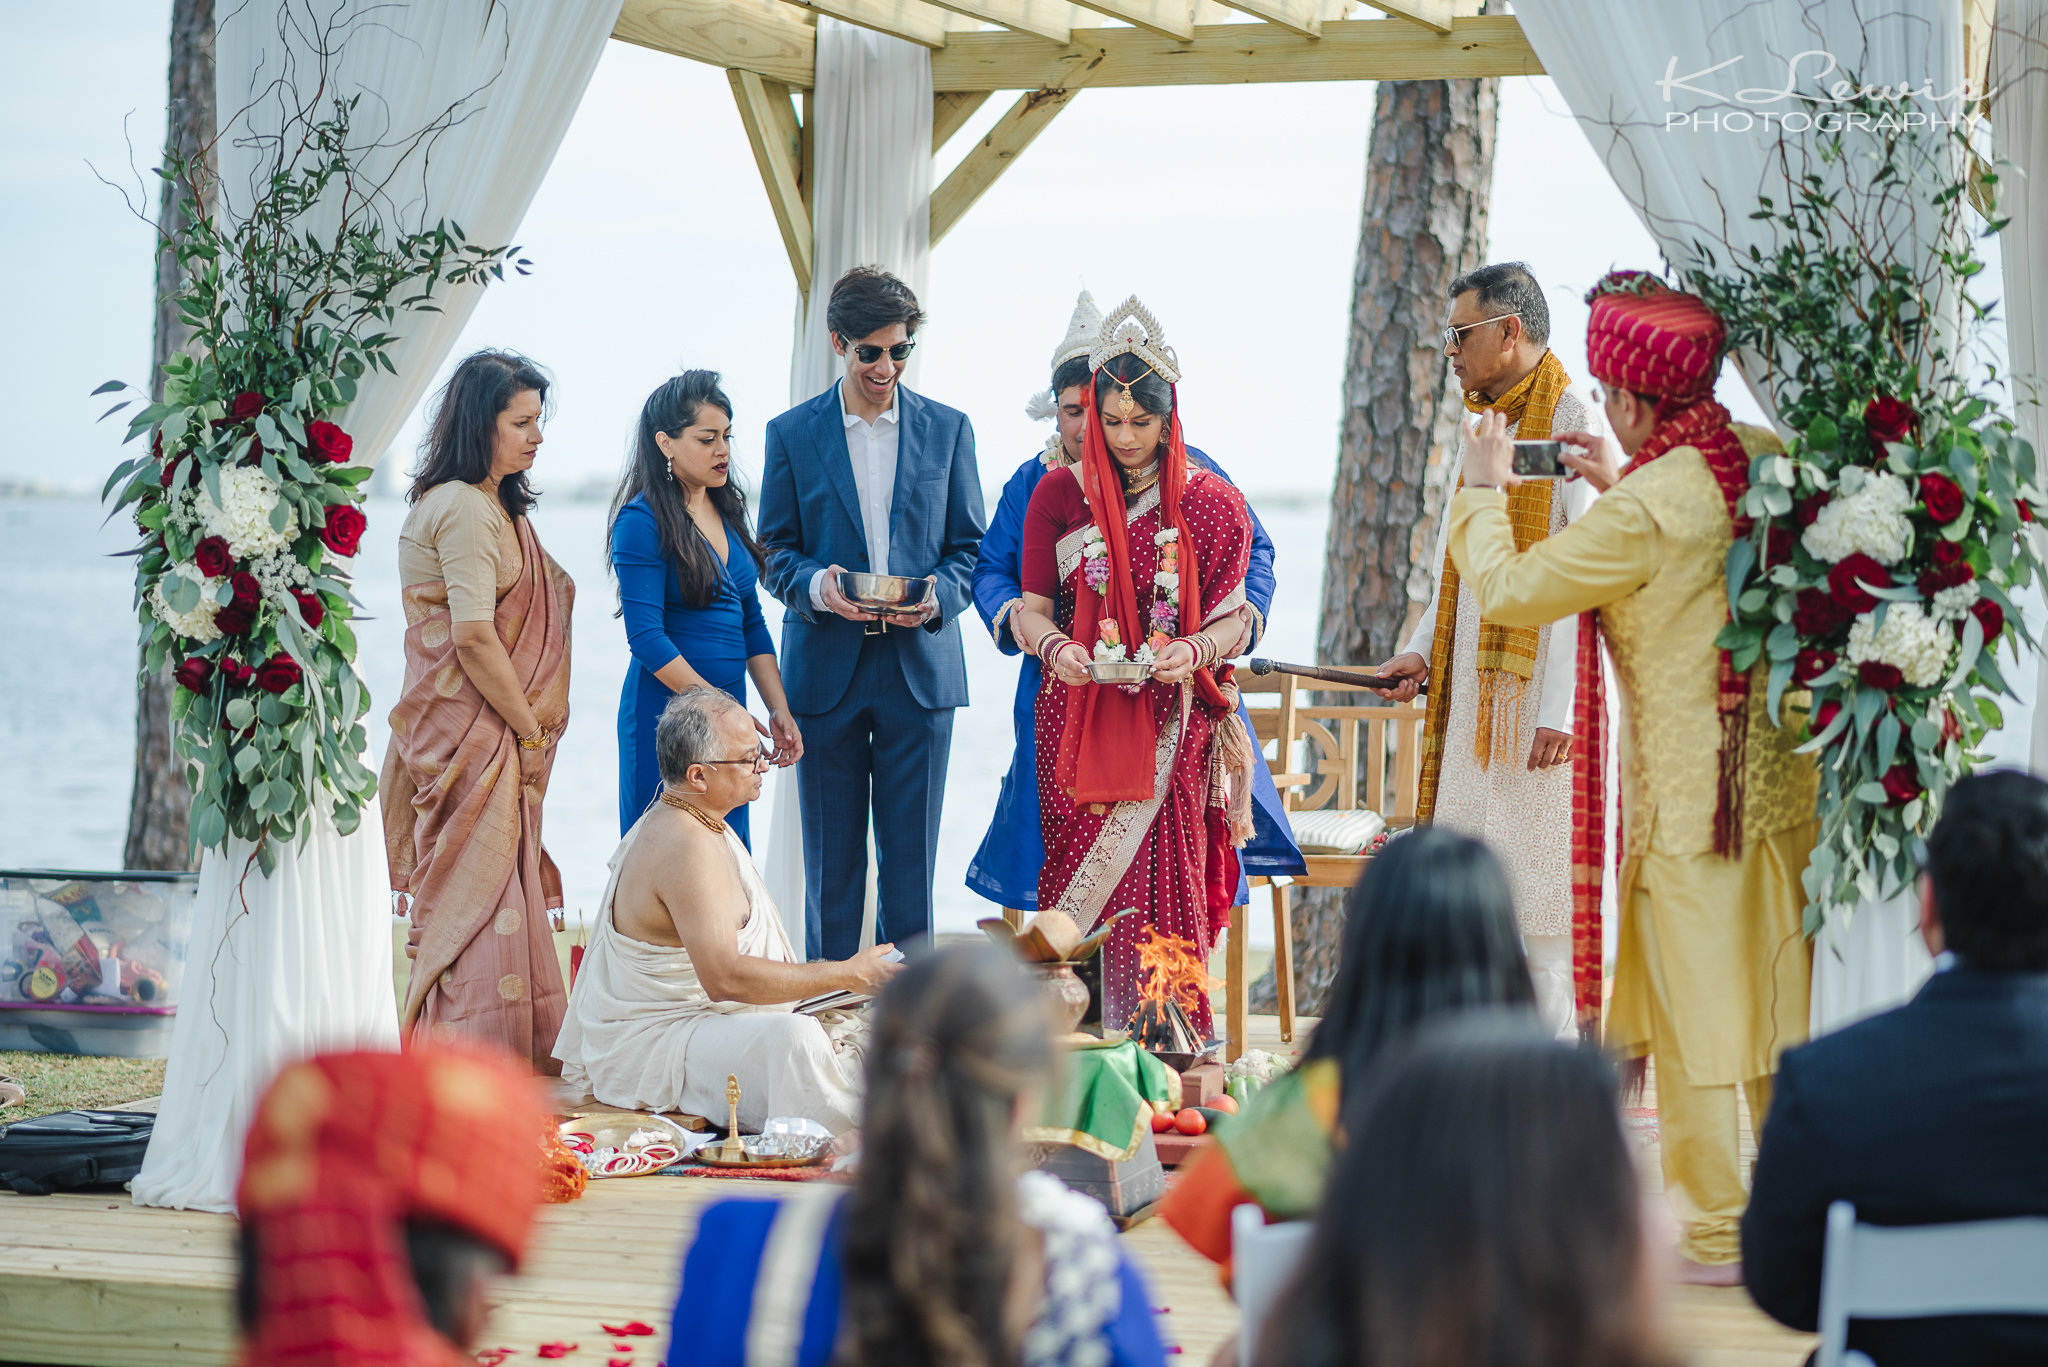 pensacola florida indian wedding photographers